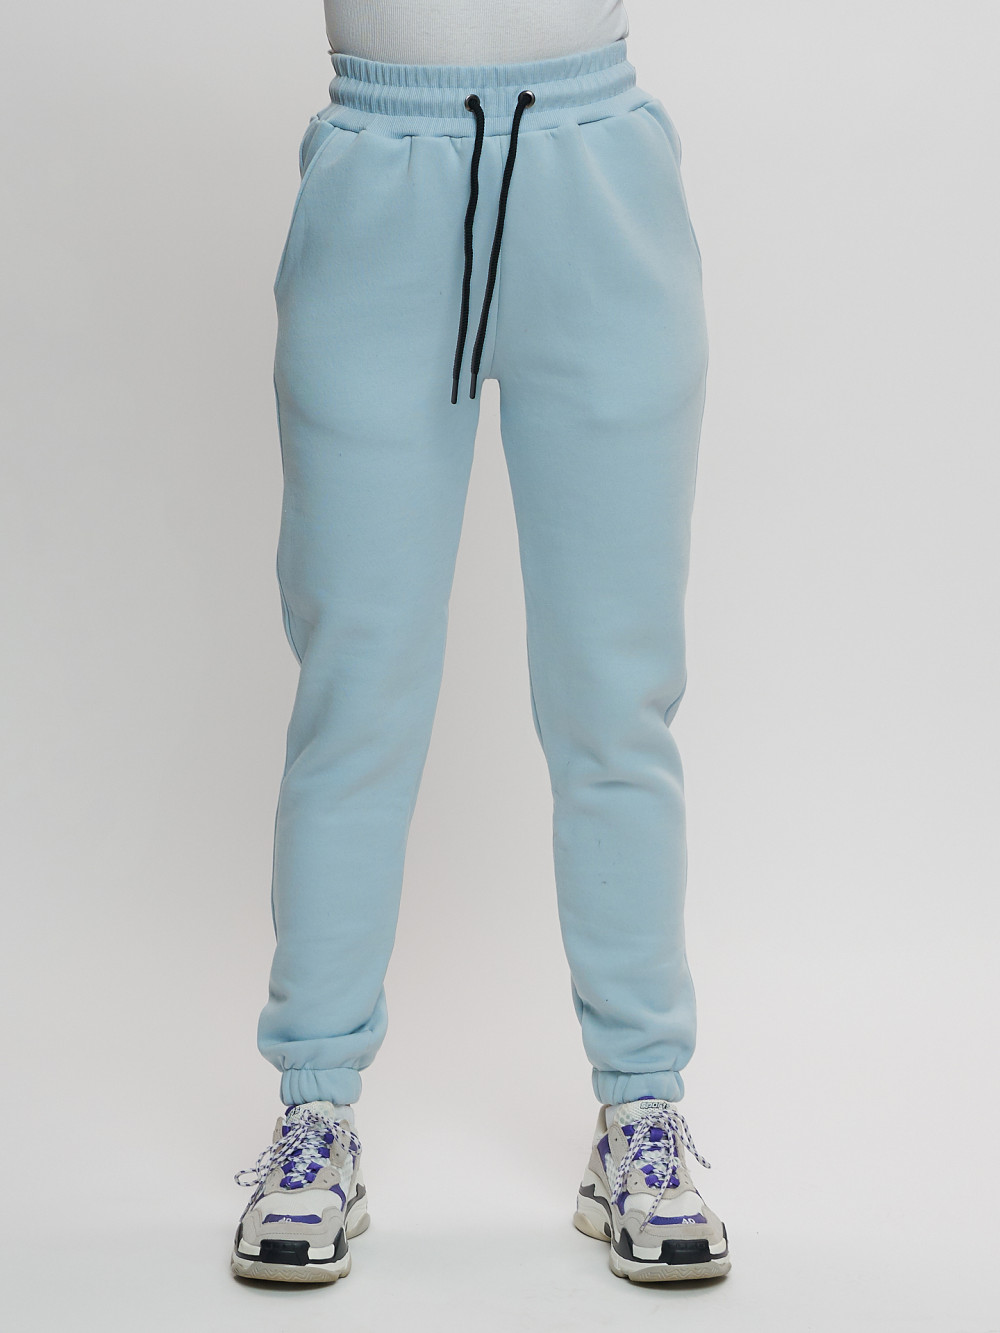 фото Спортивные брюки женские mtforce 1097 голубые 46 ru